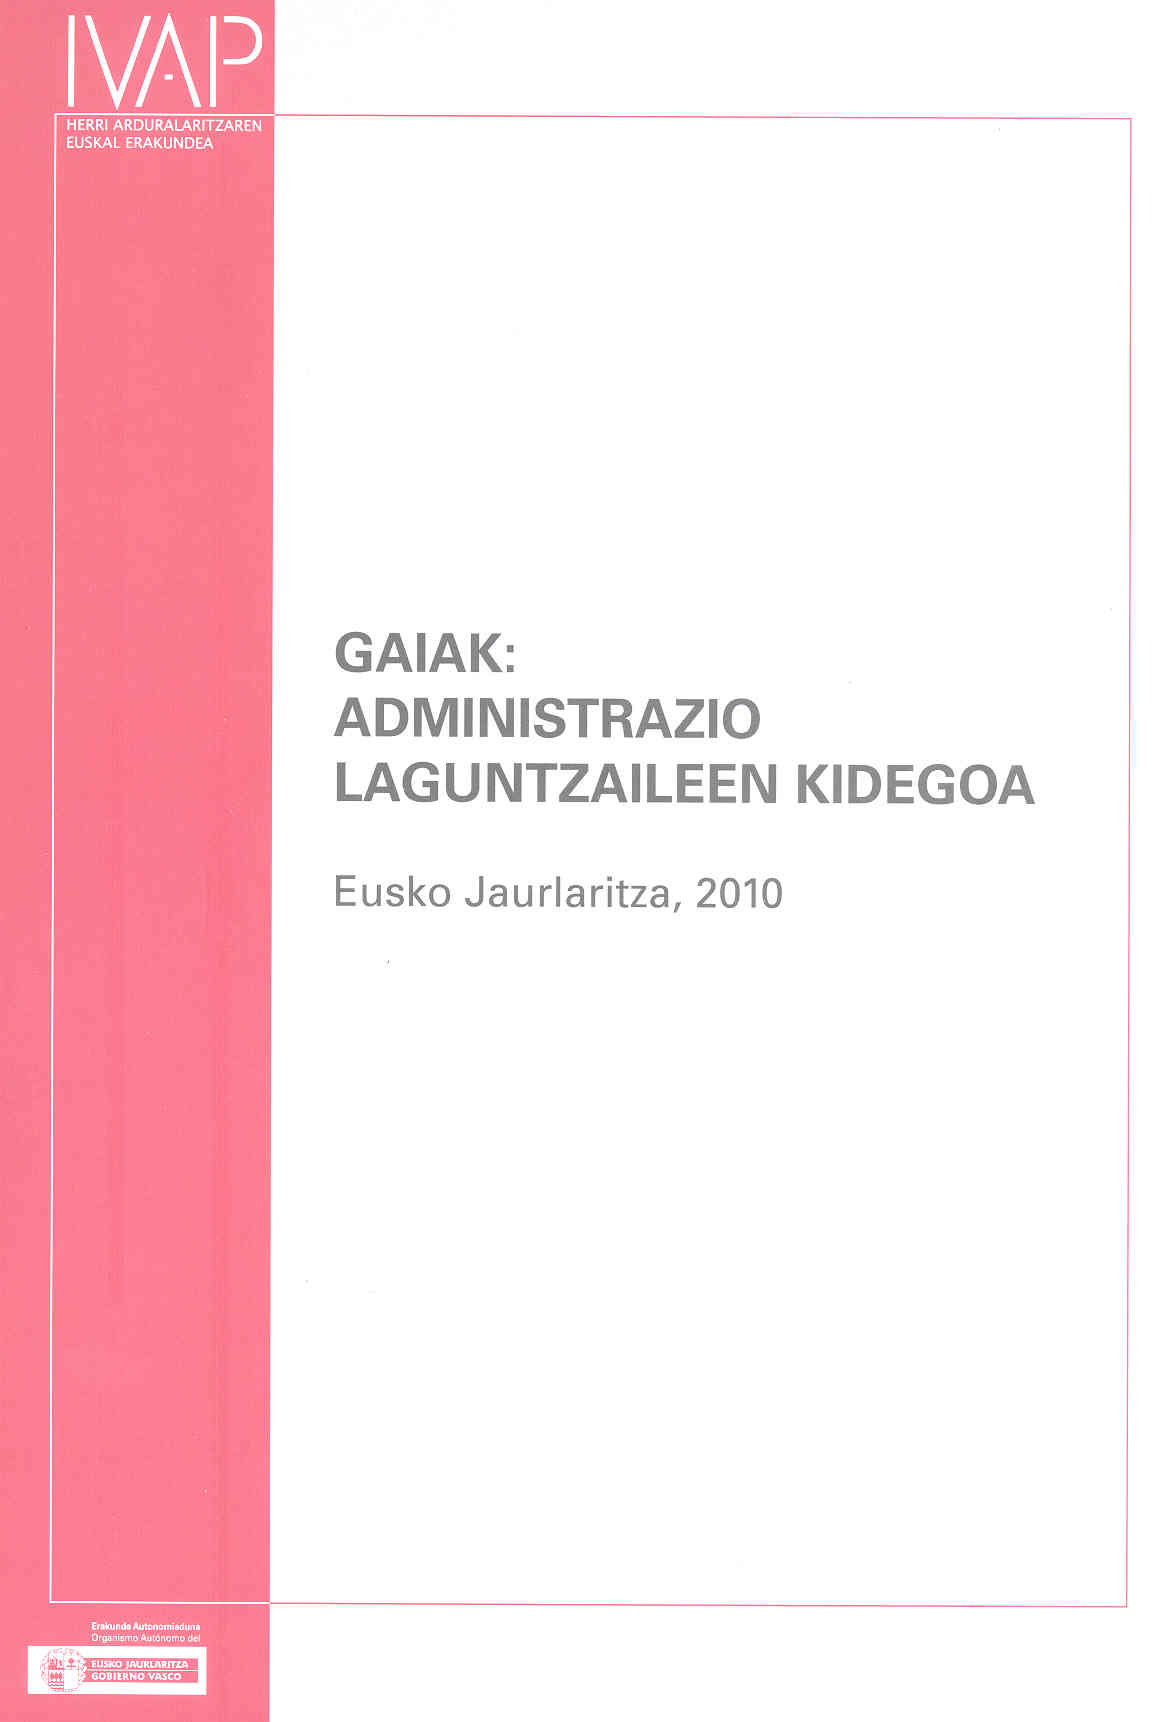 Gaiak: Administrazio Laguntzaileen Kidegoa